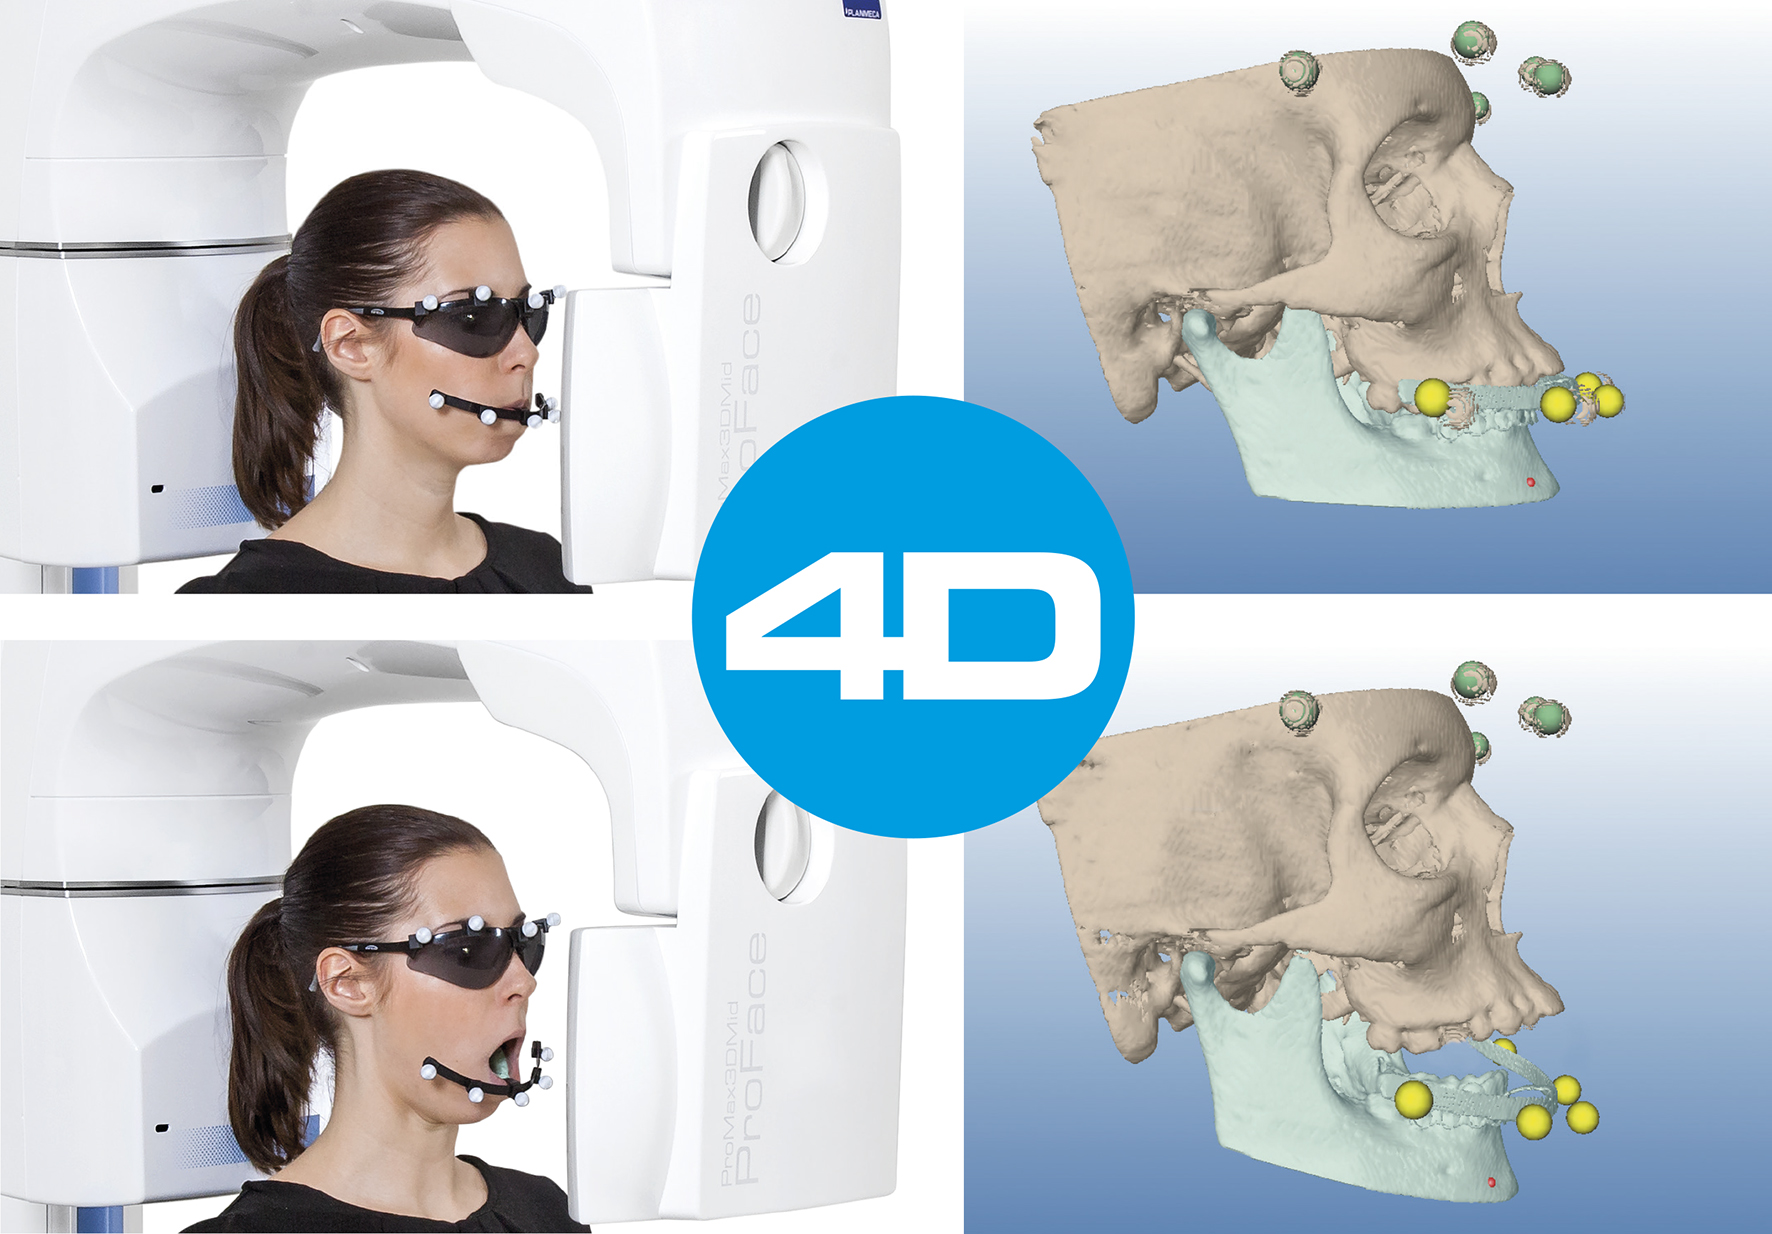 Planmeca анонсировала новейшую систему отслеживания движения челюсти Planmeca 4D™ Jaw Motion